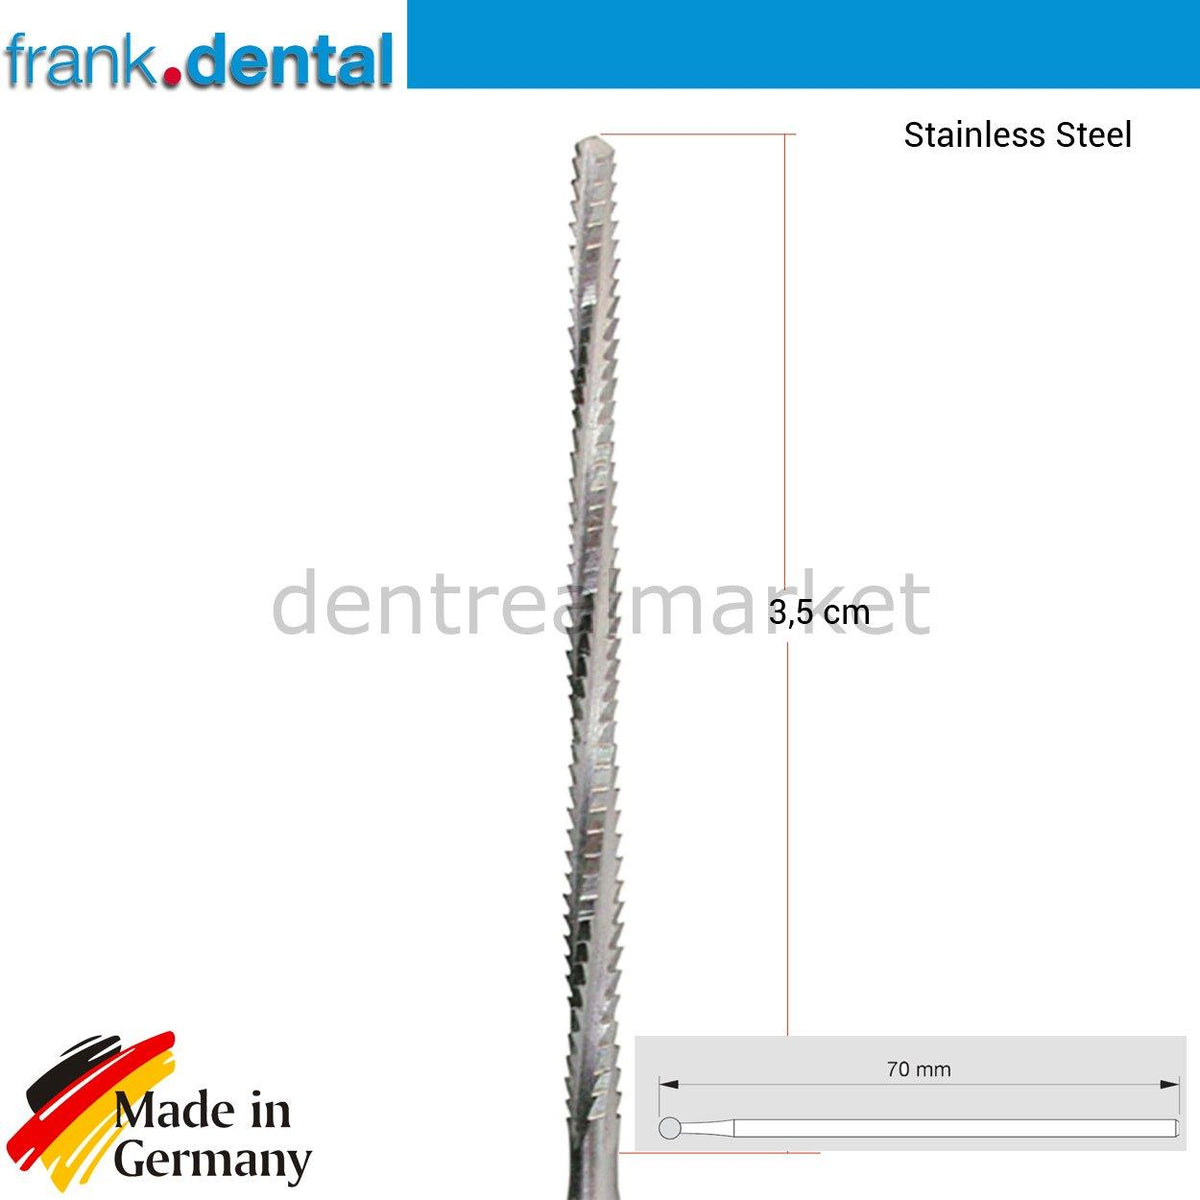 DentrealStore - Frank Dental Stainless Lindemann Bone Cutter - 169RF